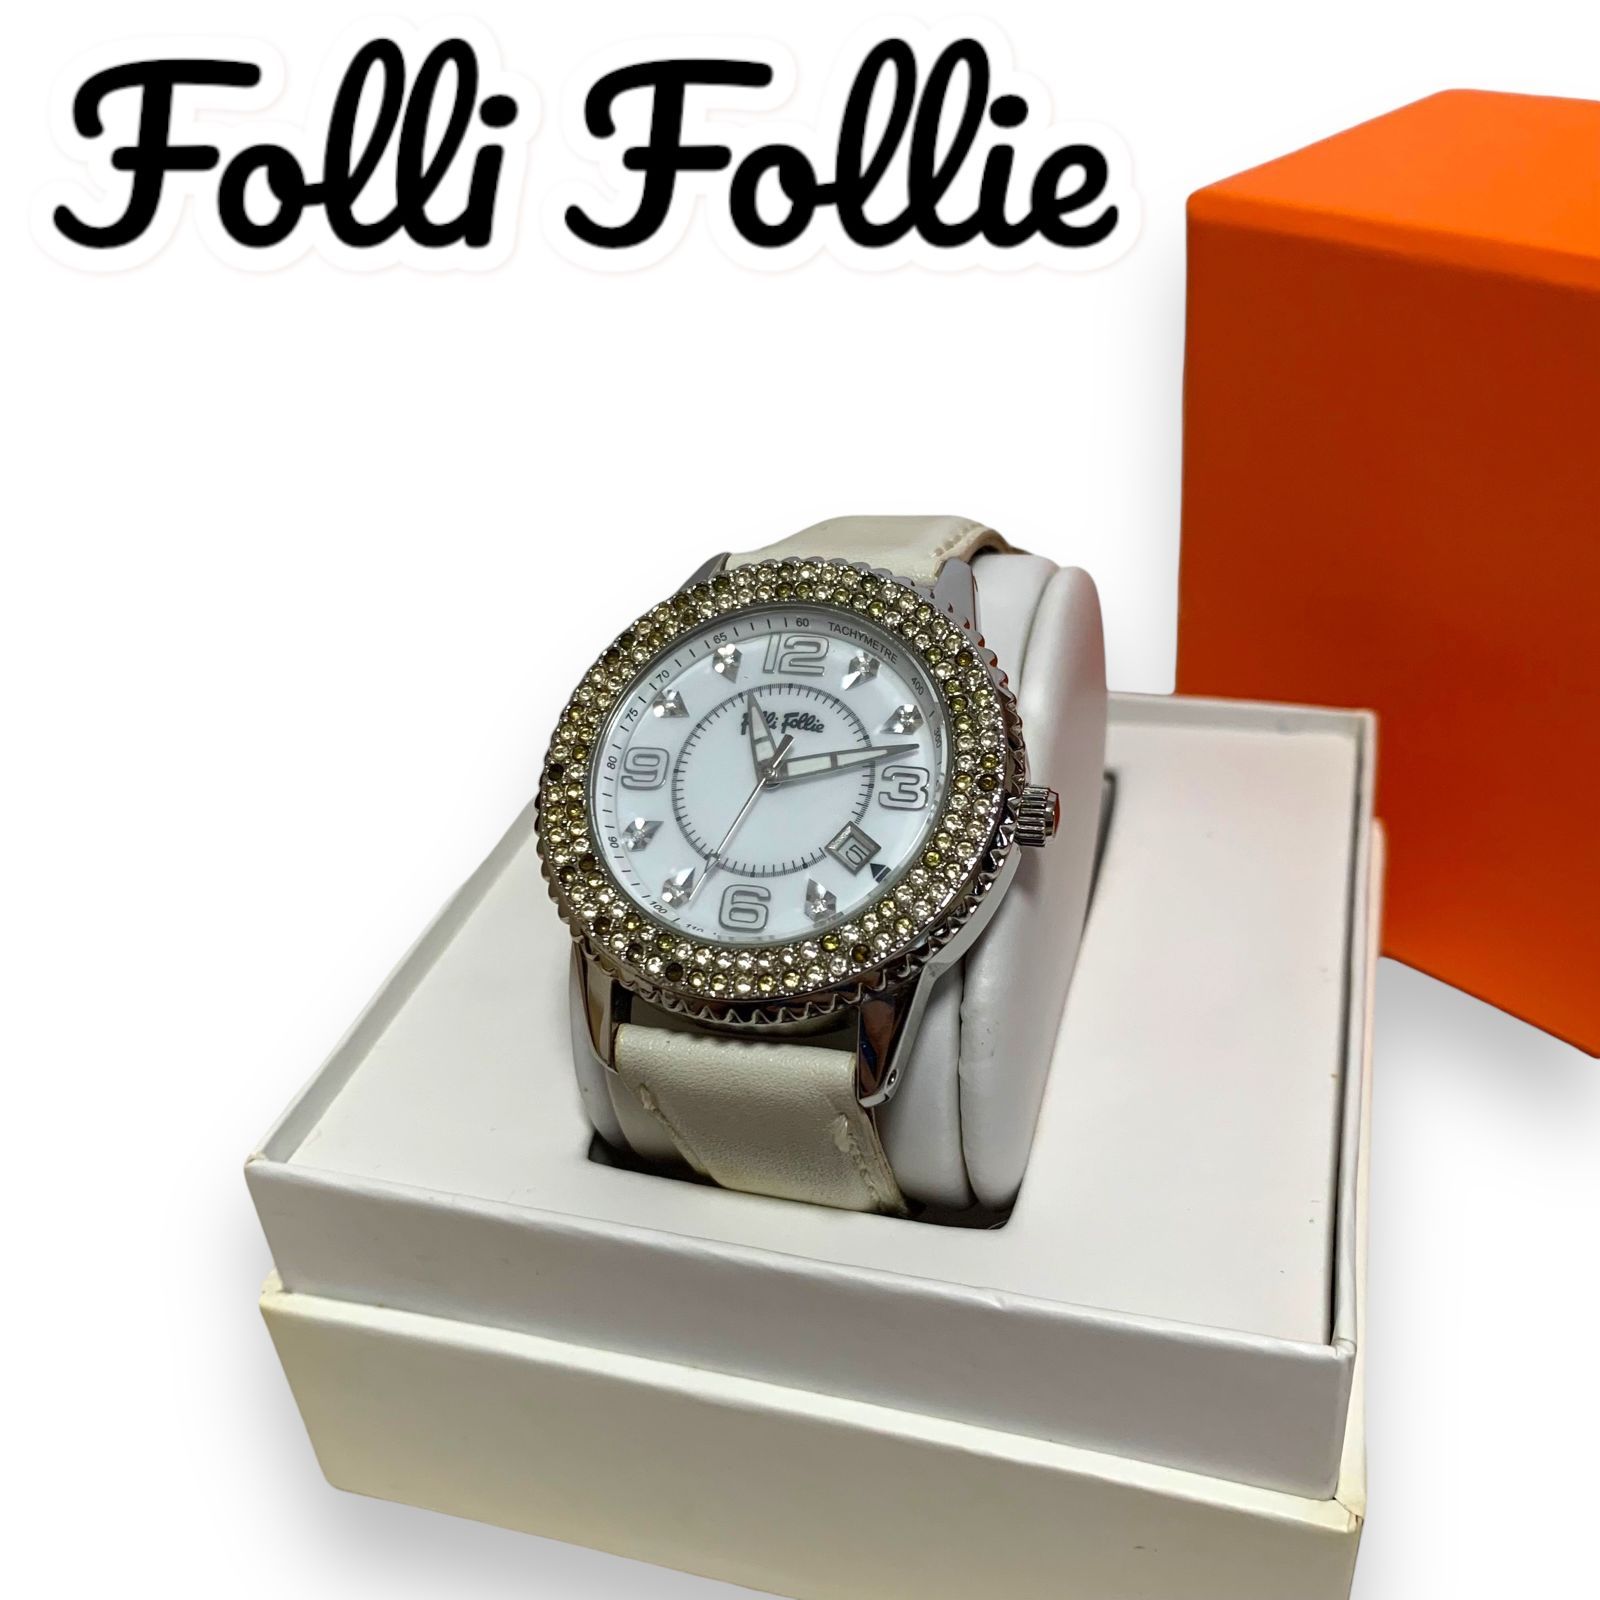 4200円 Folli Follie フォリフォリ 腕時計 箱あり 革ベルト ホワイト レディース